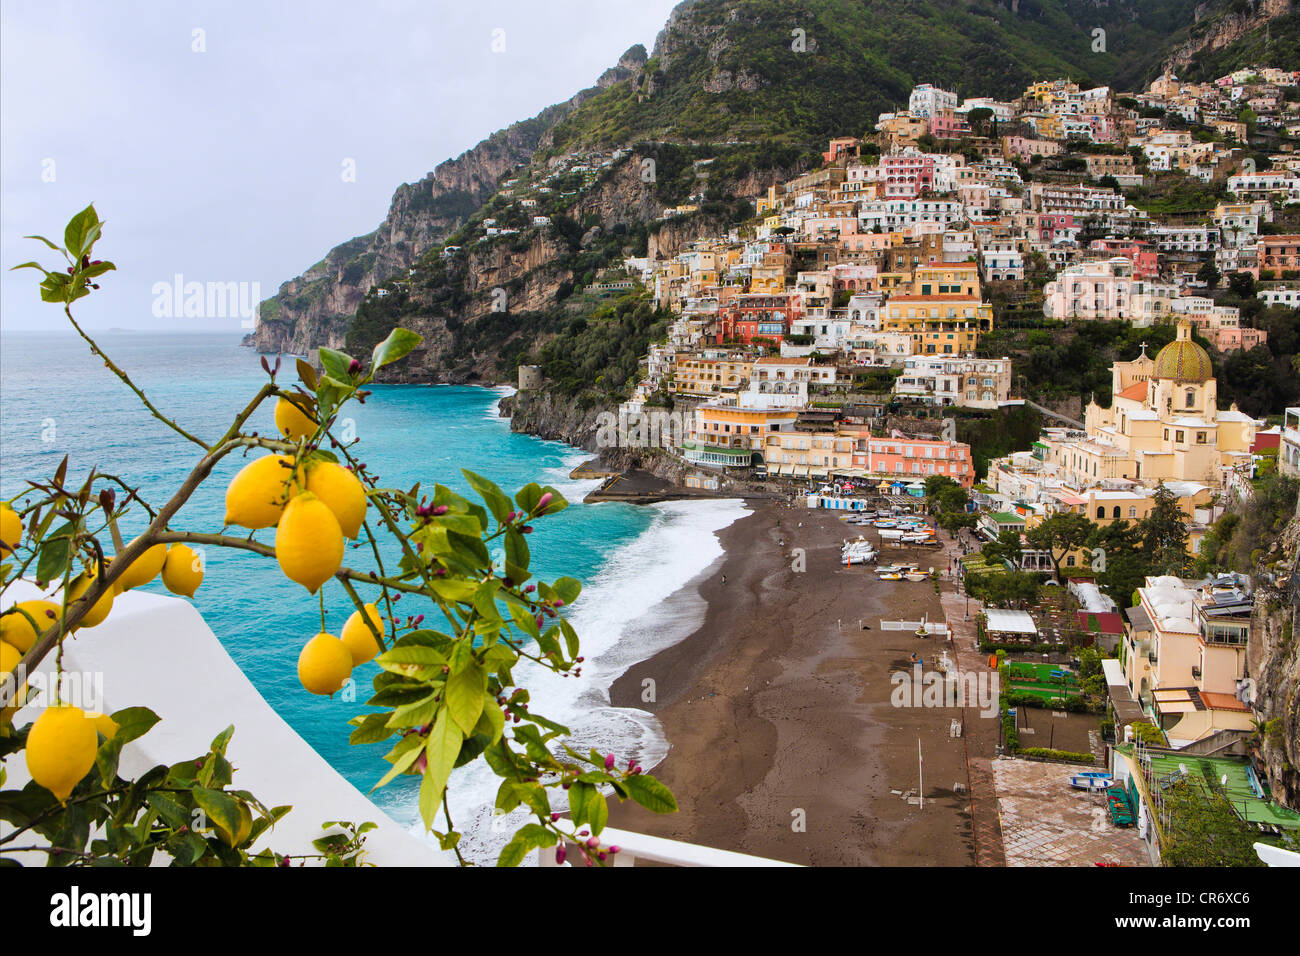 Elevato angolo di visione di un paese collinare, Positano, Campania, Italia Foto Stock